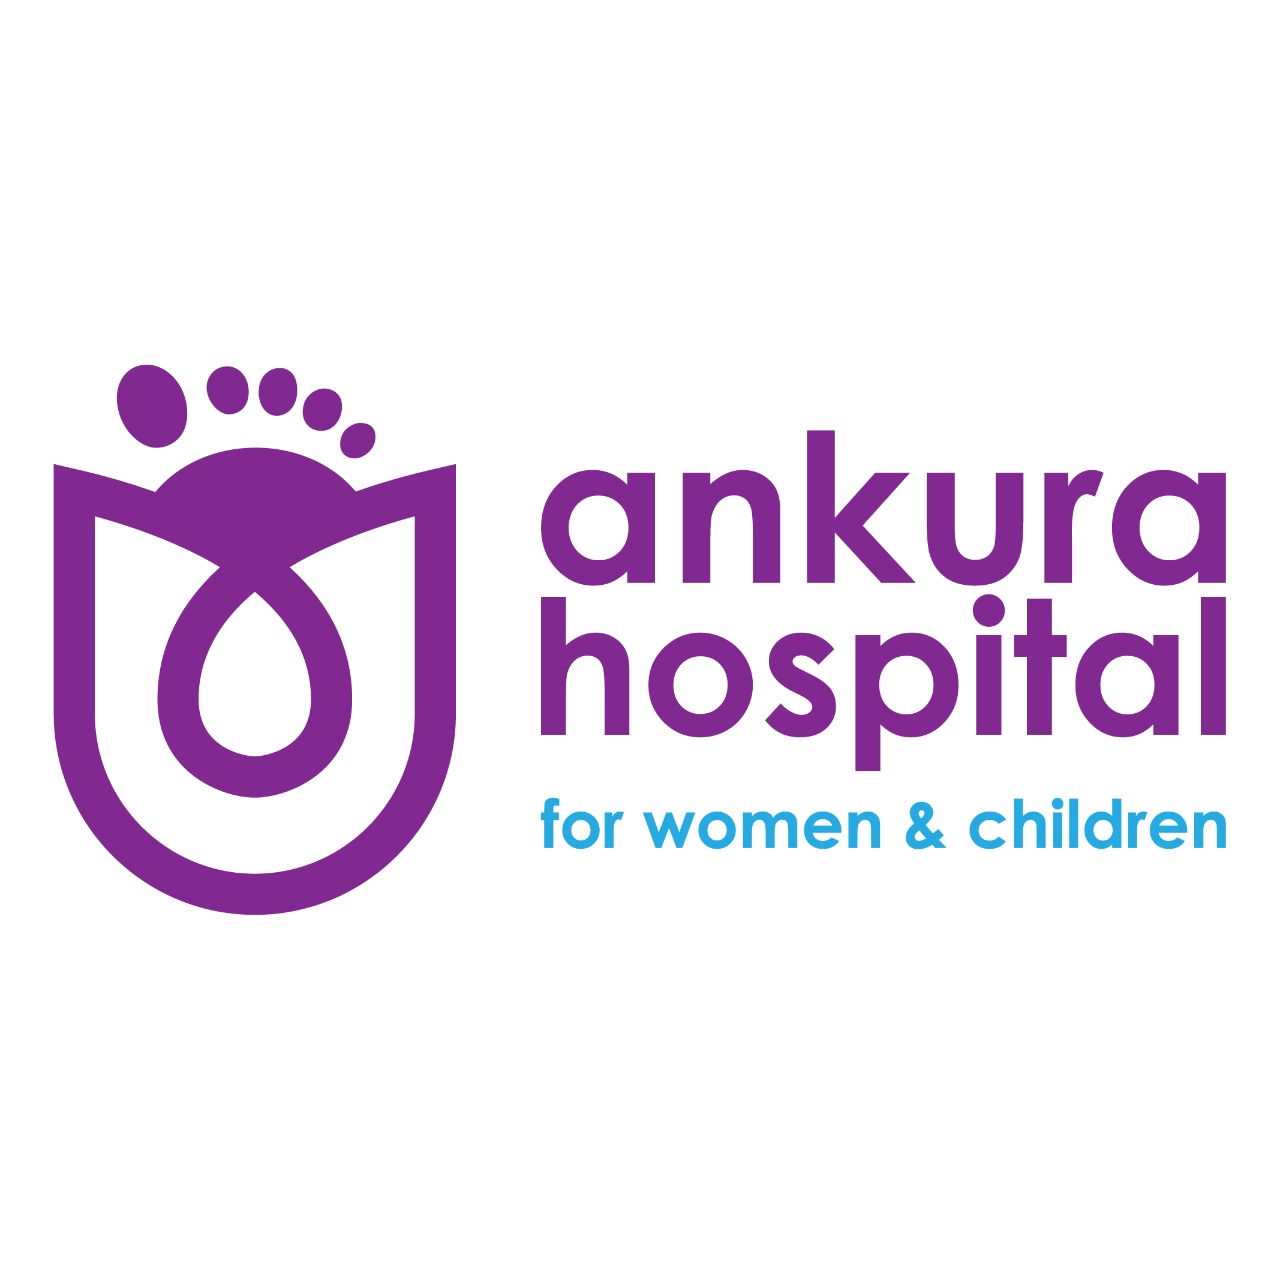 Ankura Hospital Vijayawada